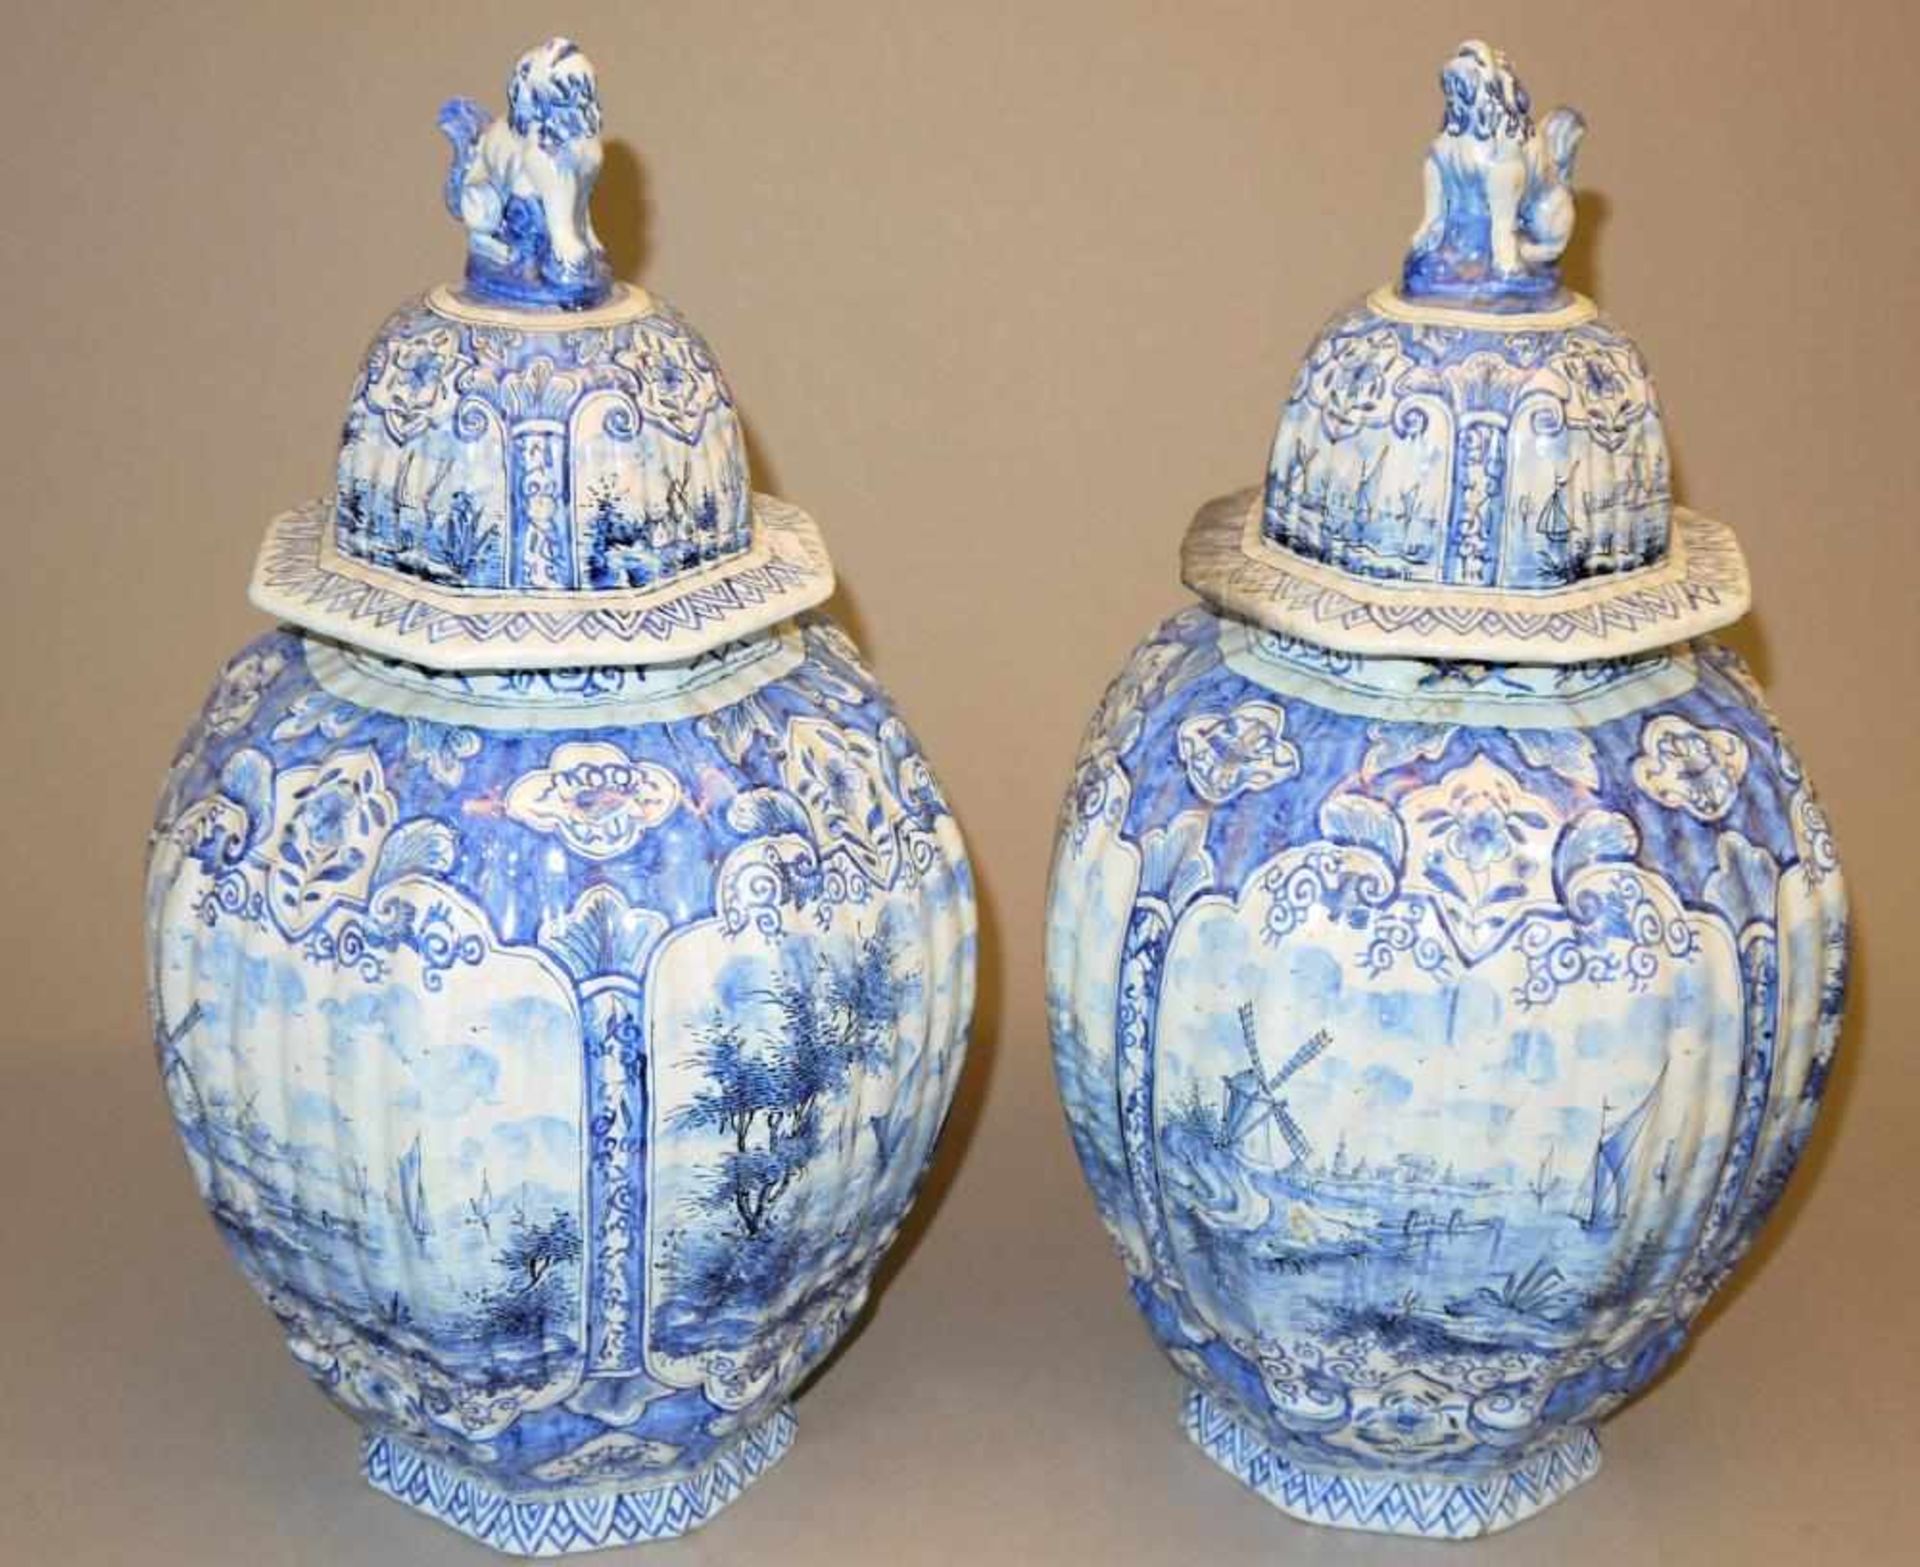 Deckelvasen-Paar aus Delfter Fayence, Niederlande 19. Jh. Gegenstücke zweier Vasen mit Haubendeckeln